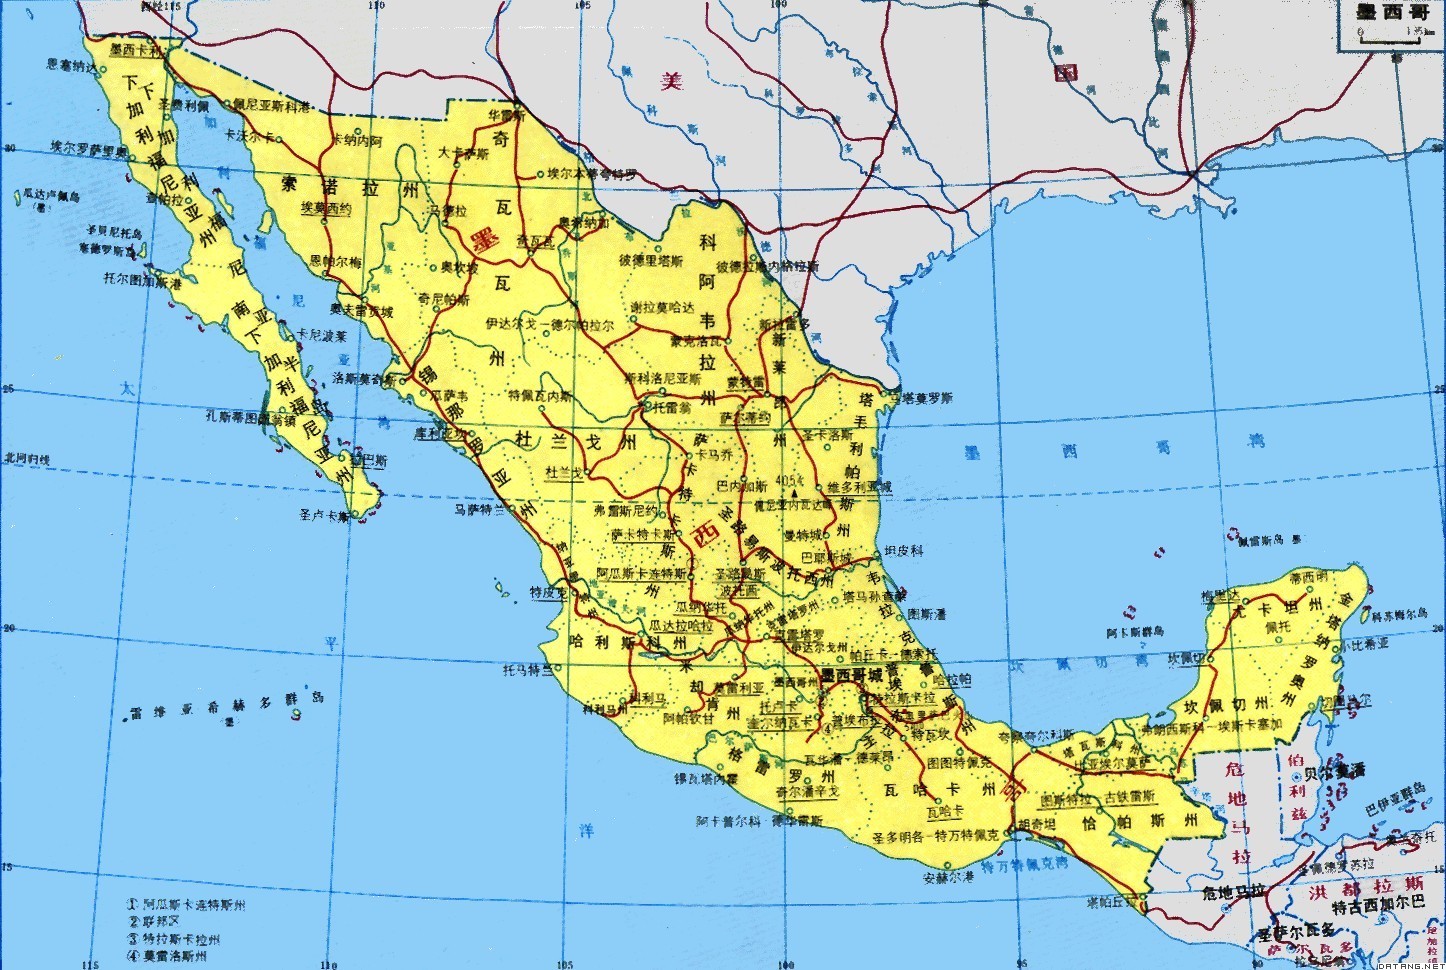 墨西哥双清专线,墨西哥双清渠道,墨西哥双清主线,君安速运墨西哥双清